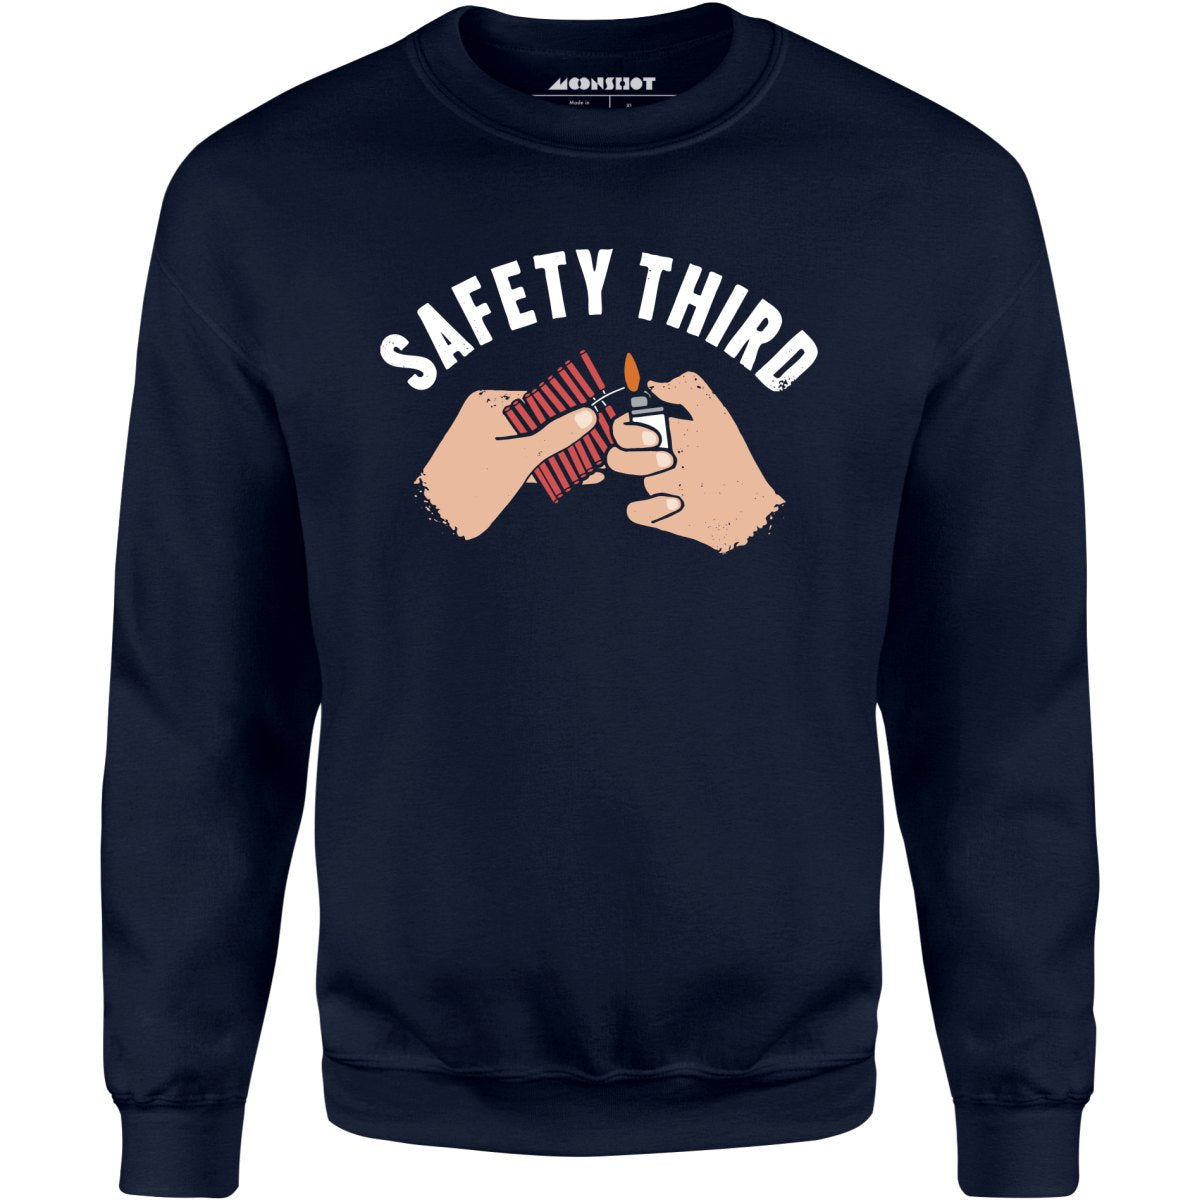 Safety Third - Unisex Sweatshirt